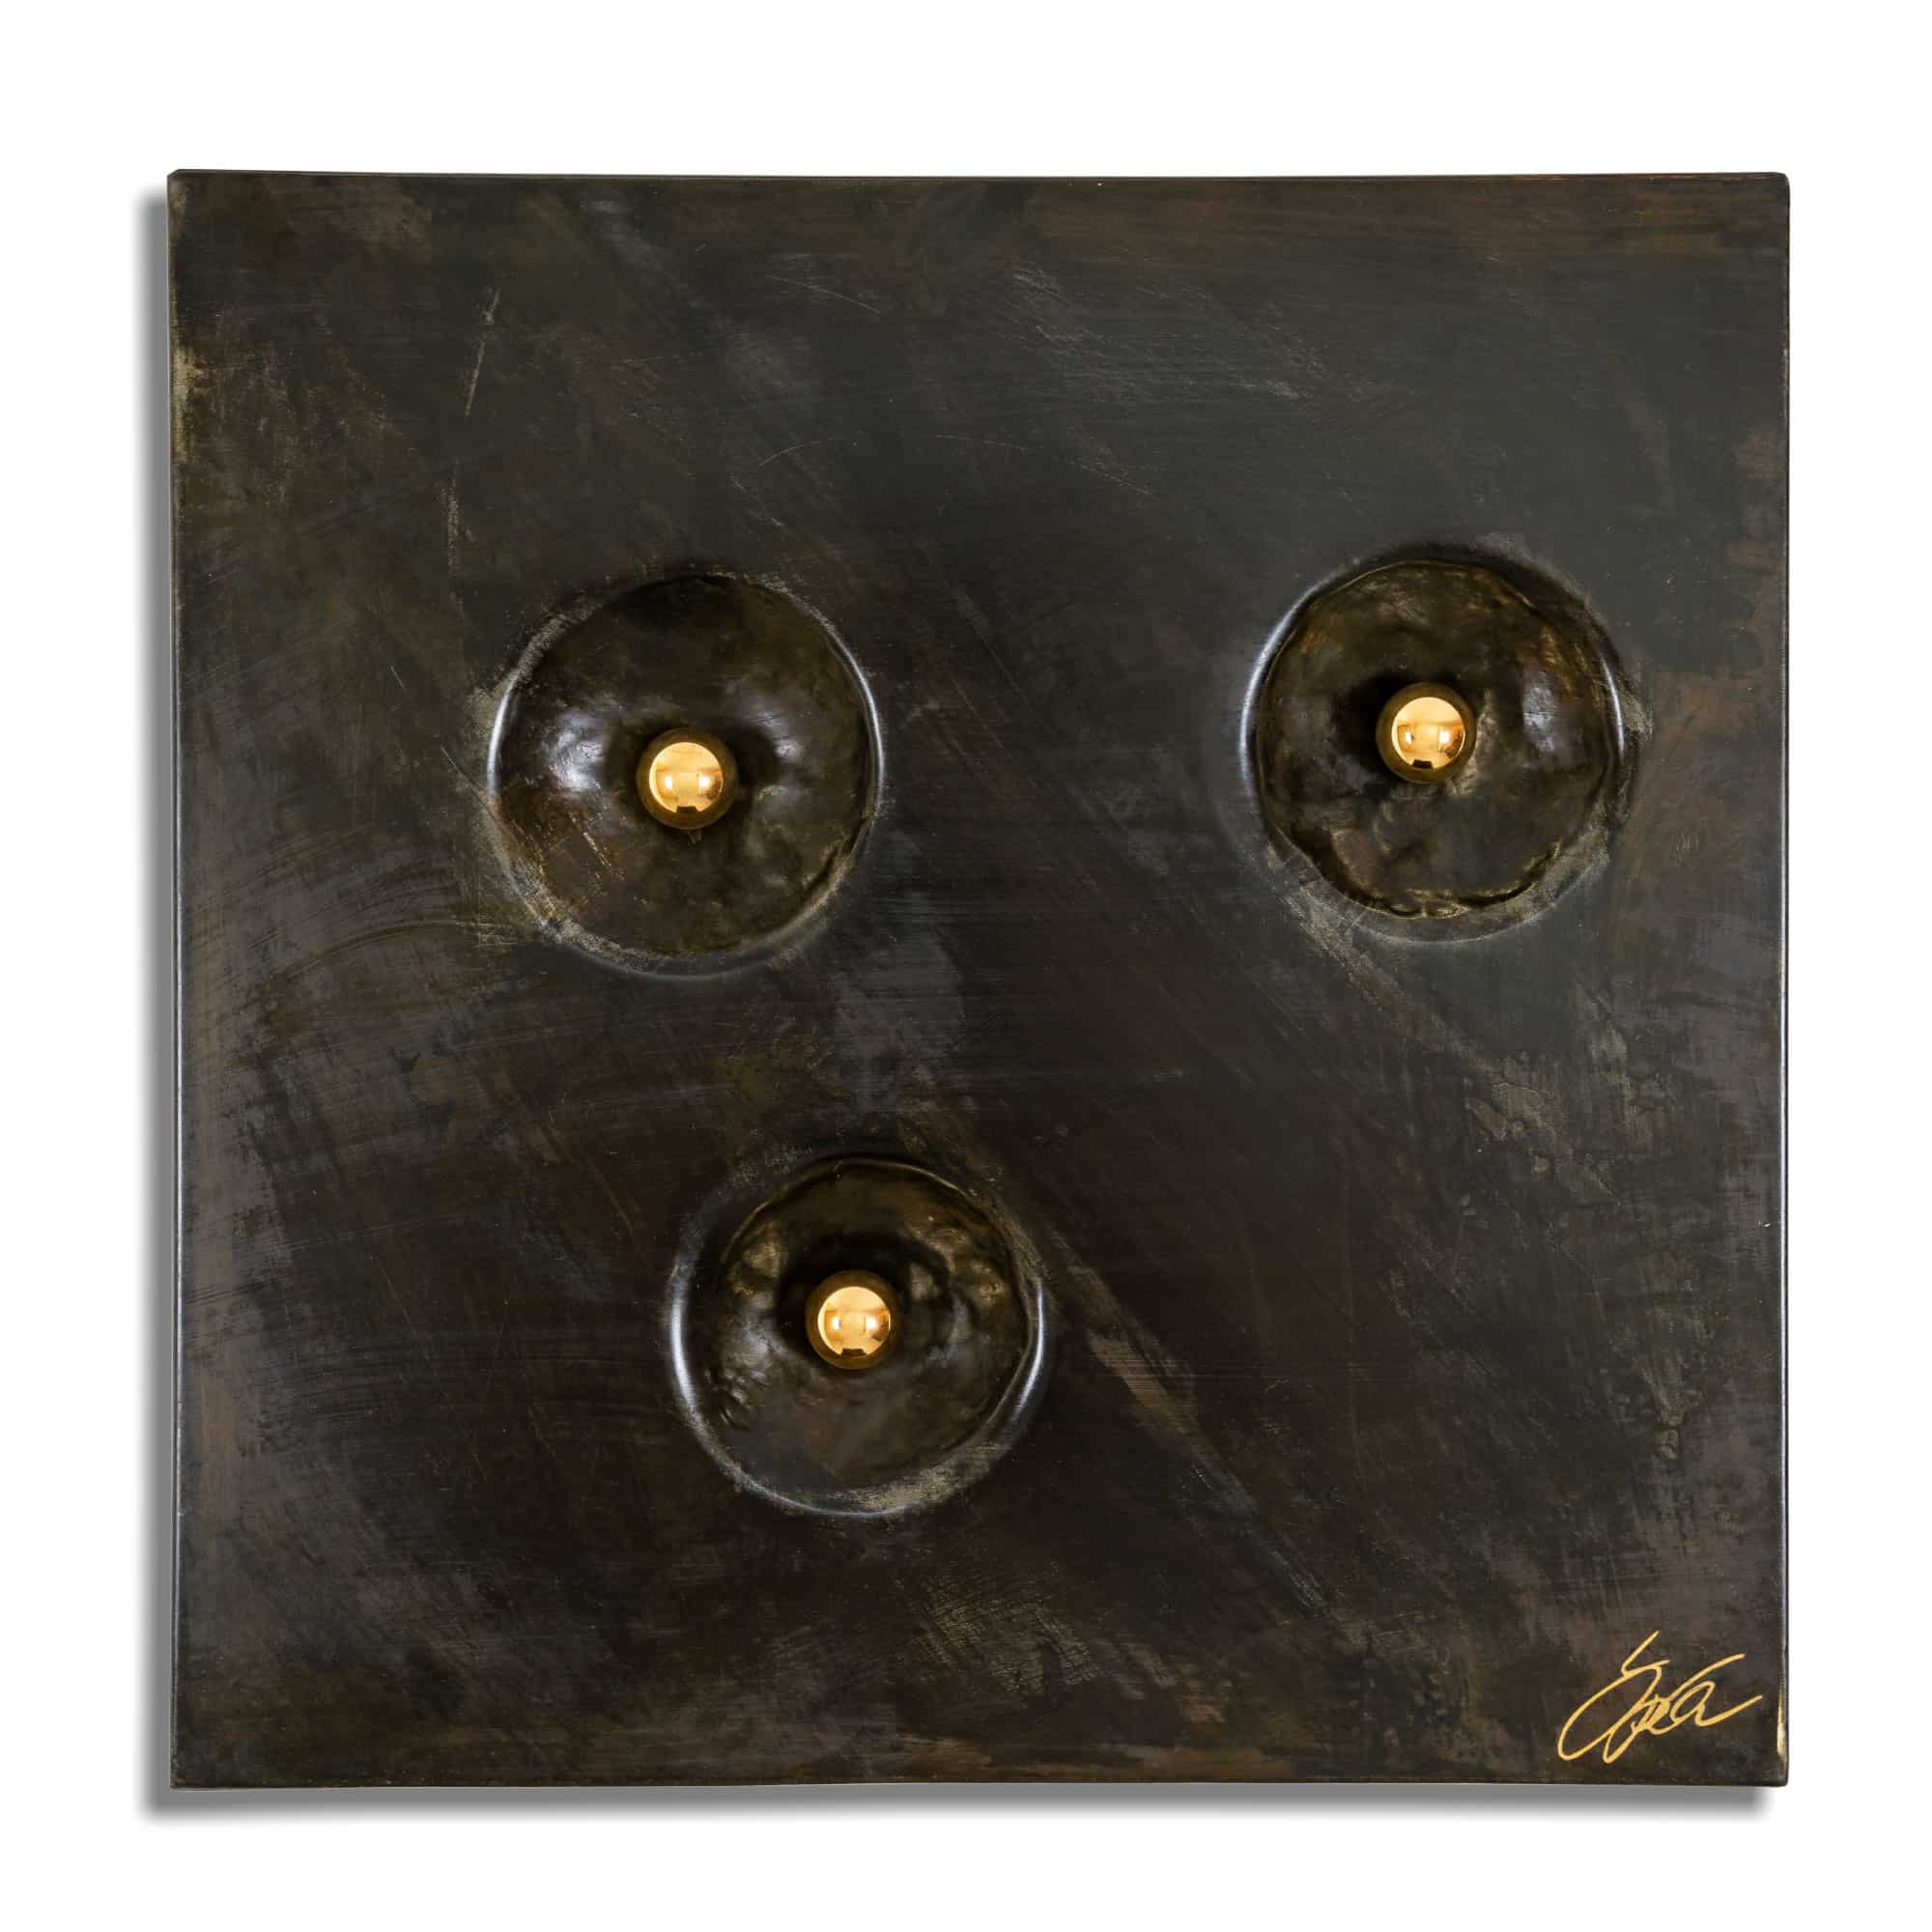 Kunstwerk mit dem Namen „below“. 3 Kugeln in 24 Karat vergoldet, Oberfläche dunkel brüniert. Vom Stahlbildhauer im Atelier Daniel Springer